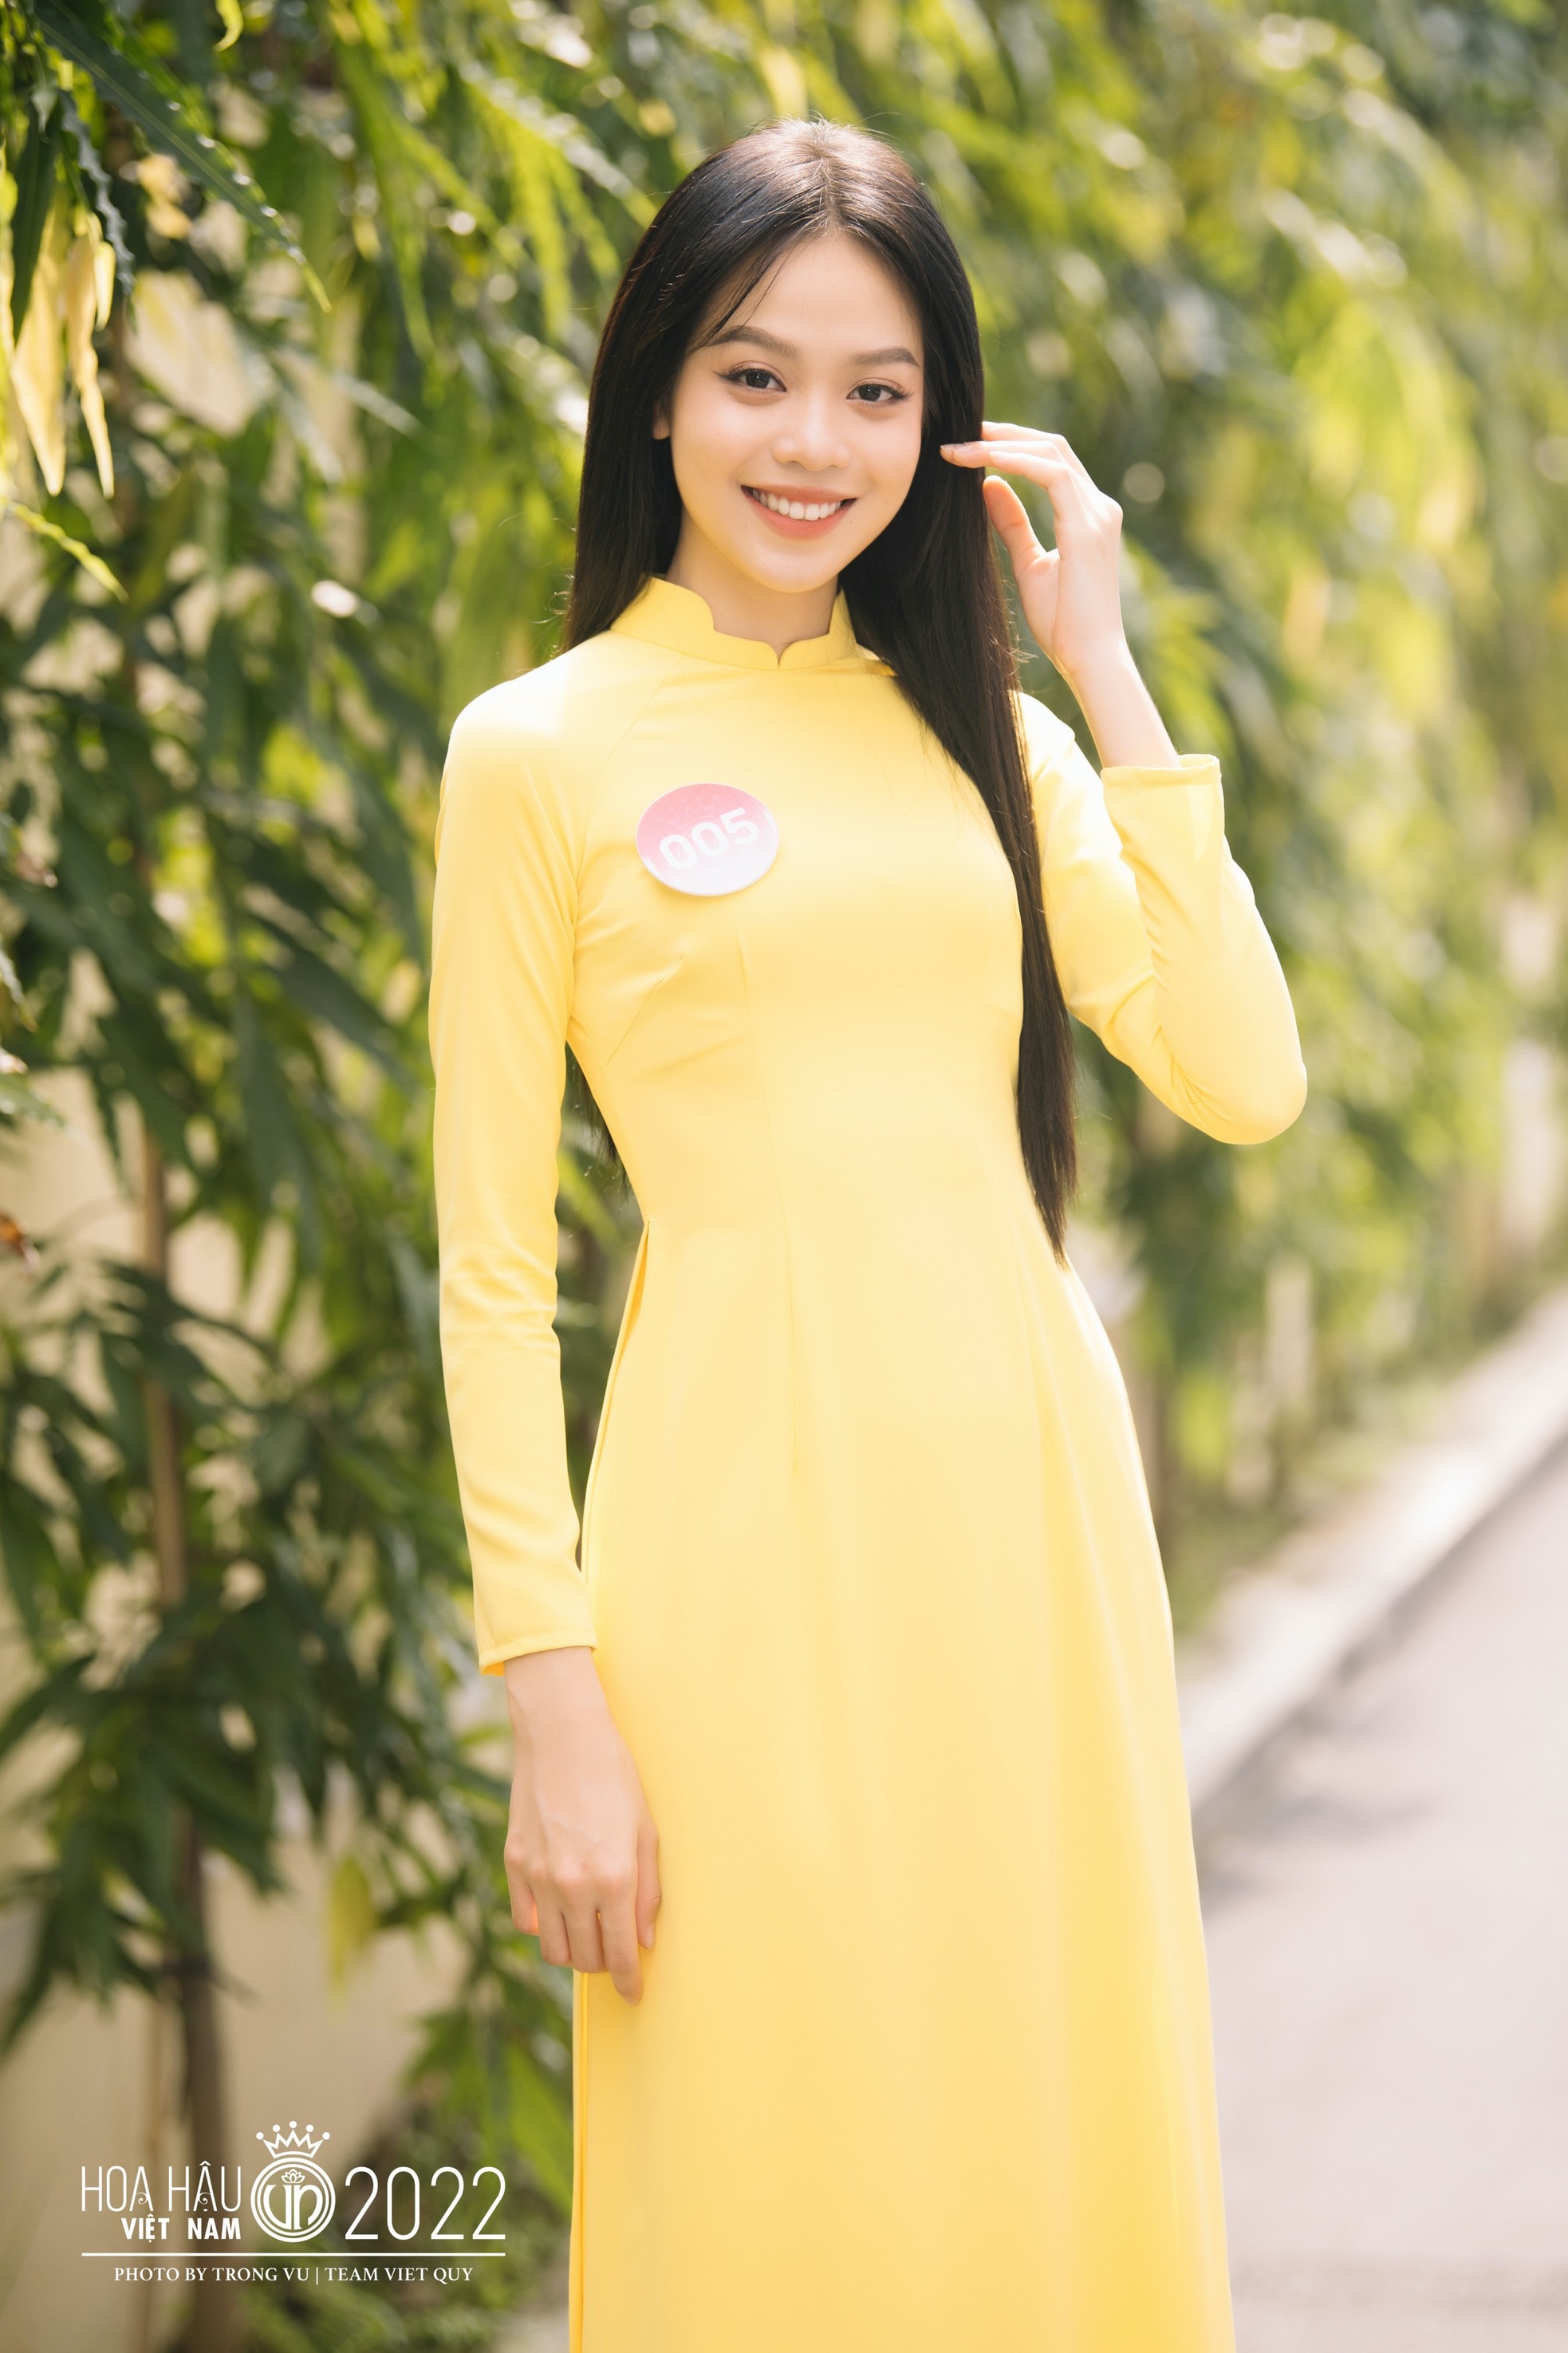 Cách Hoa hậu Huỳnh Thị Thanh Thủy gây chú ý-17